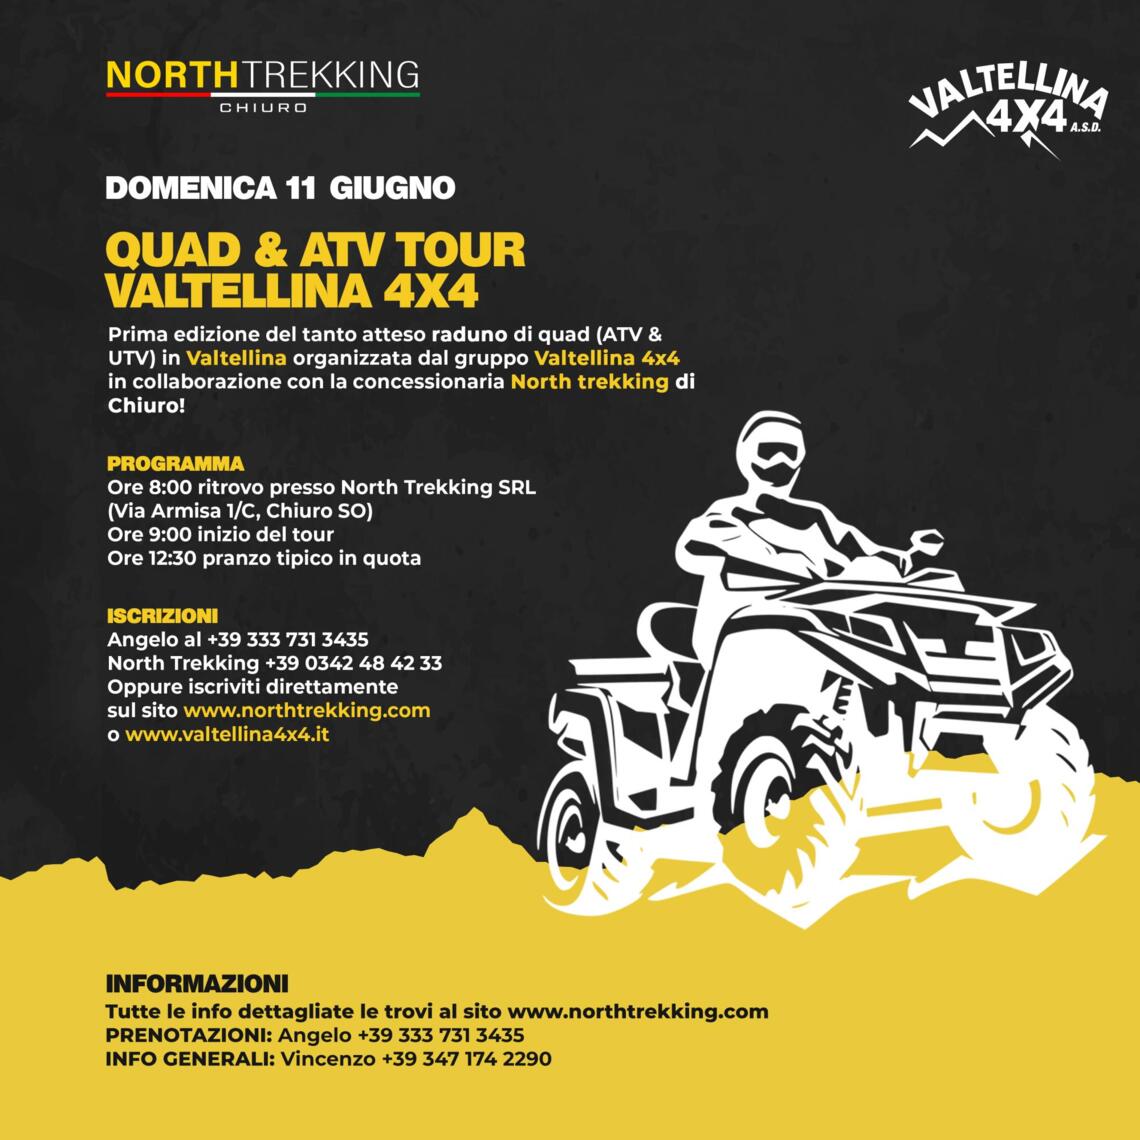 Quad & ATV Tour Valtellina 4x4   1709761692_import_11_1005465